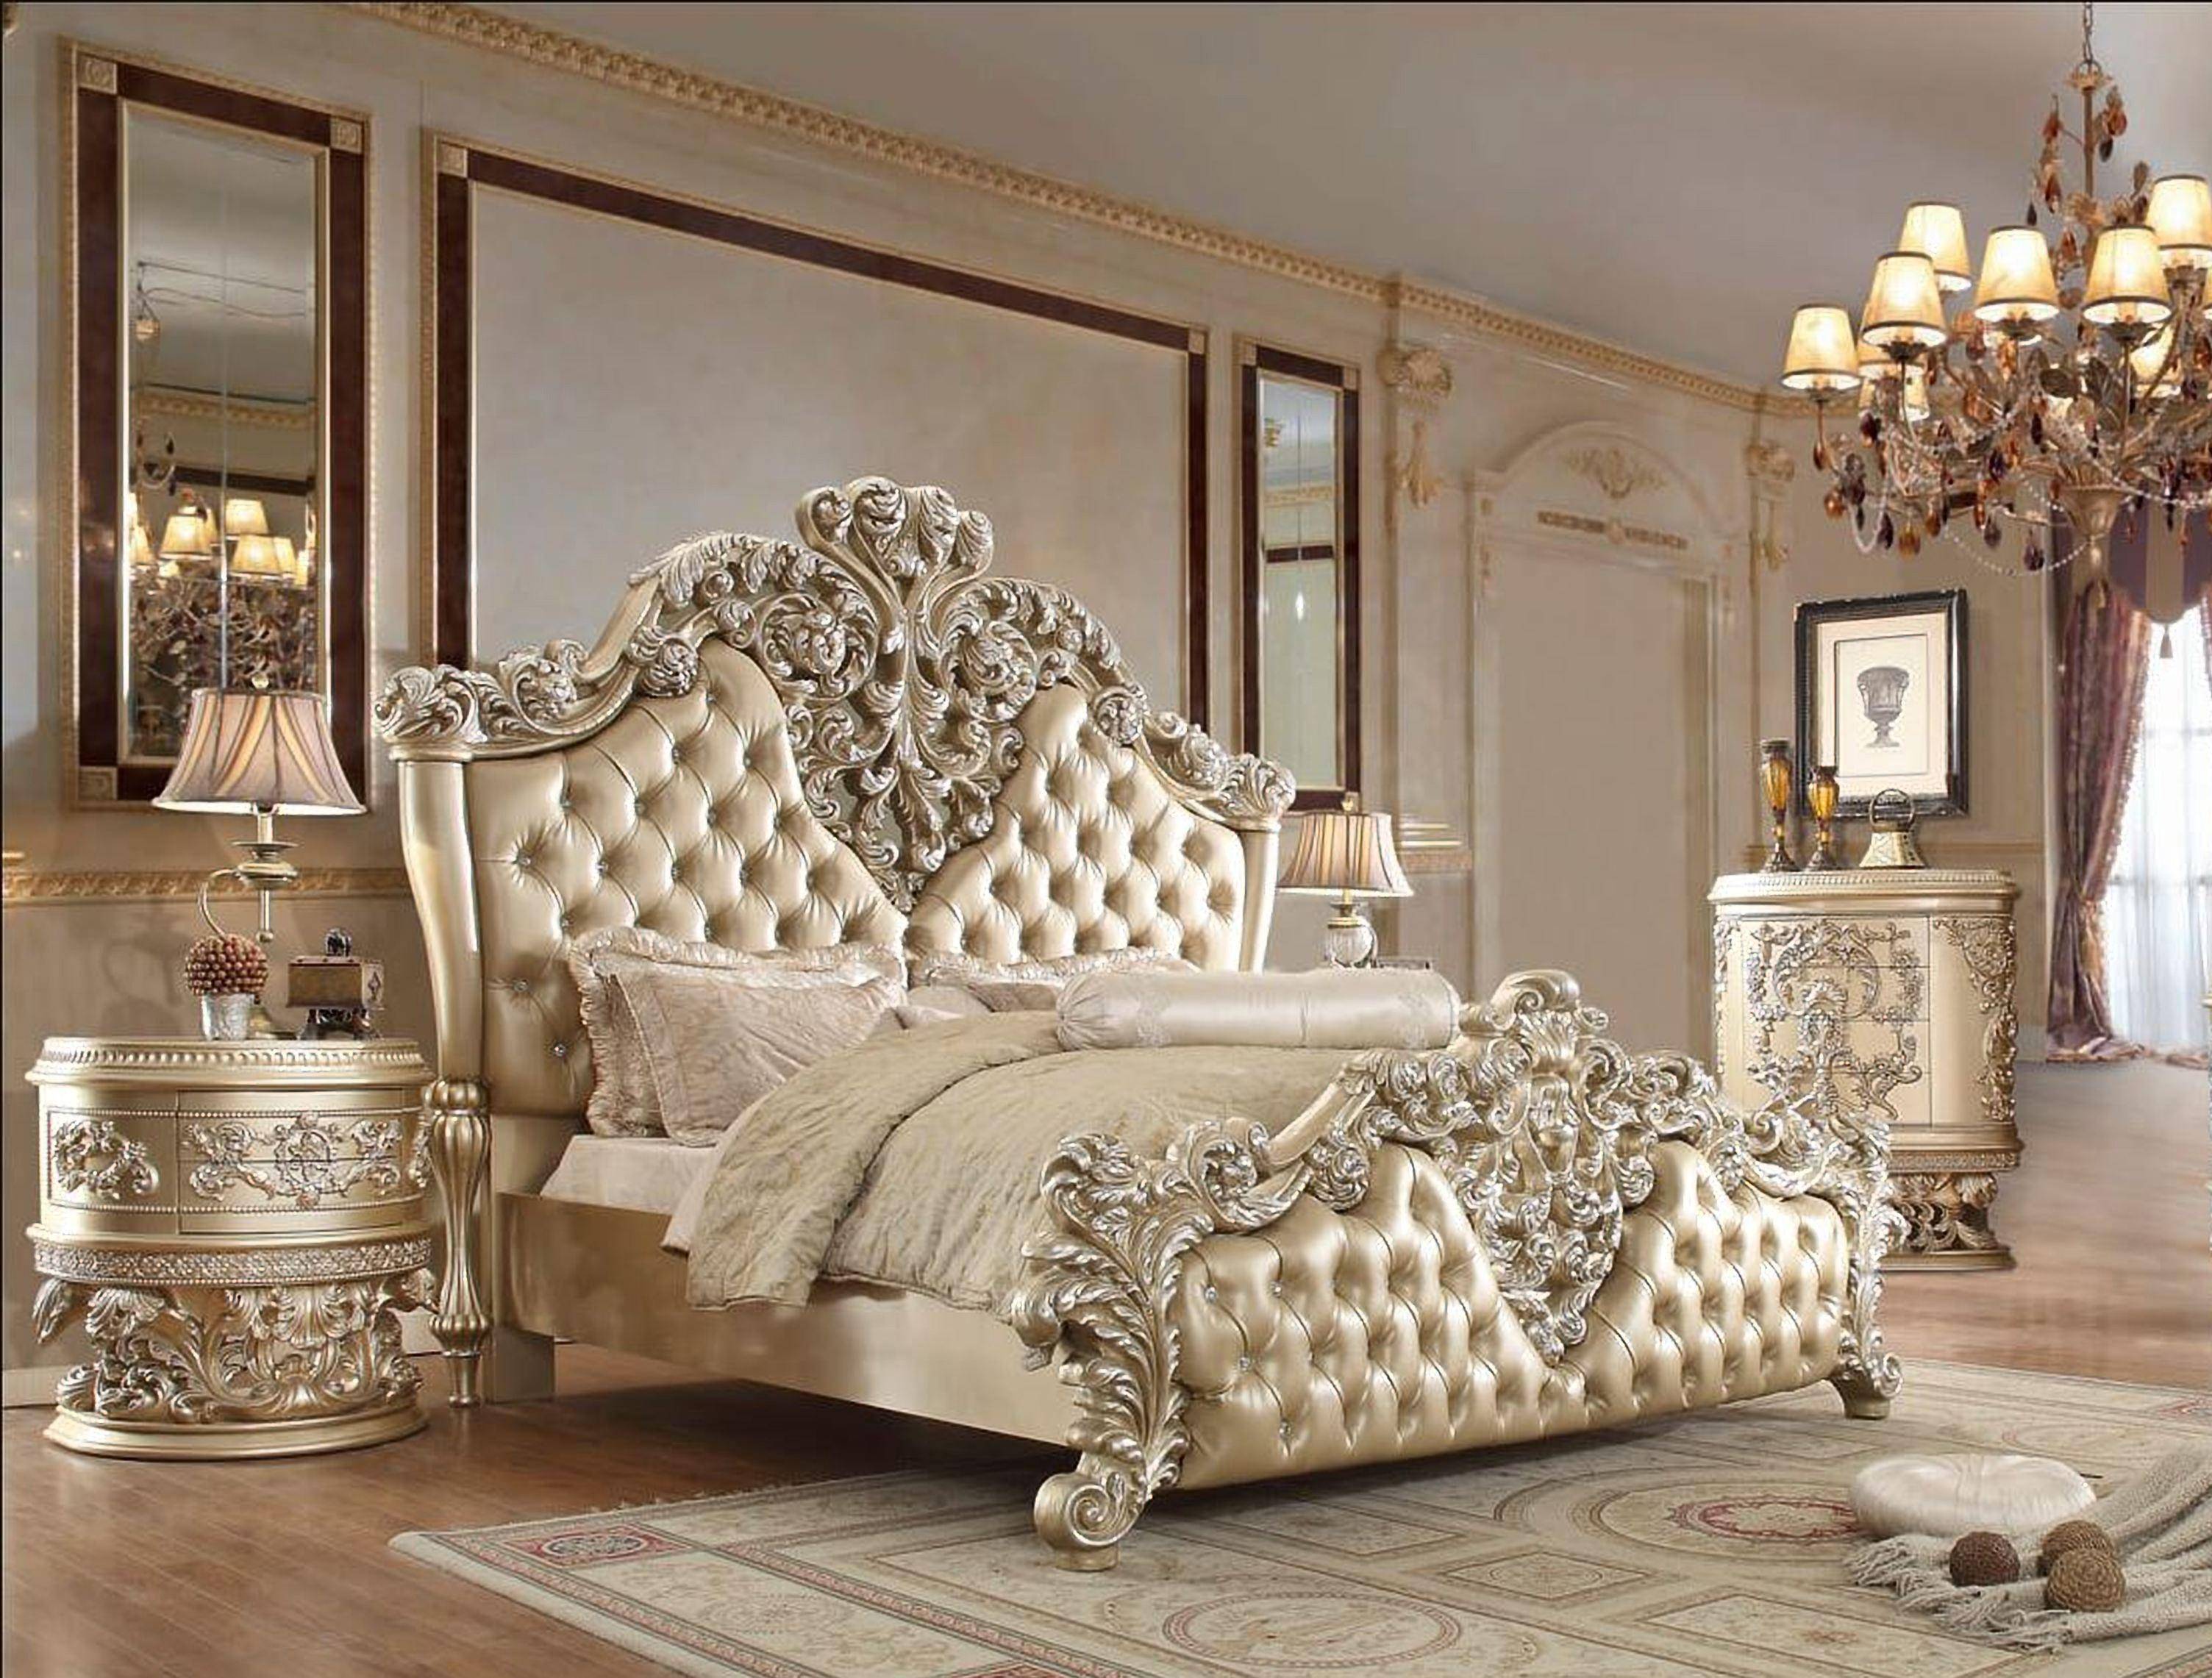 Hd 8022 King Sleigh Bedroom Set, Luxury King Bedroom Suites